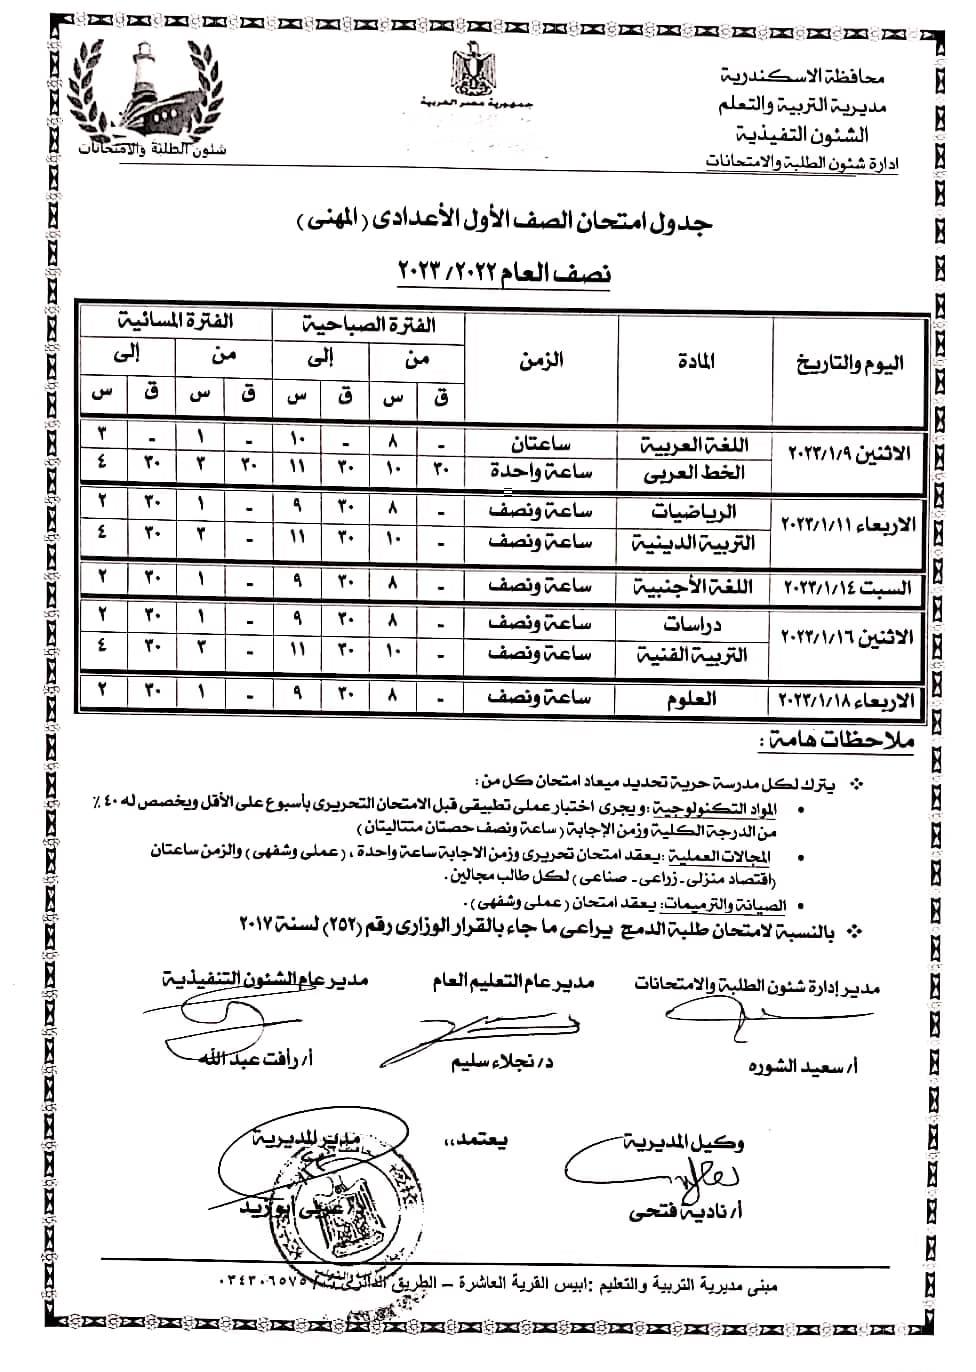 جداول امتحانات نصف العام لكافة المراحل التعليمية بالإسكندرية